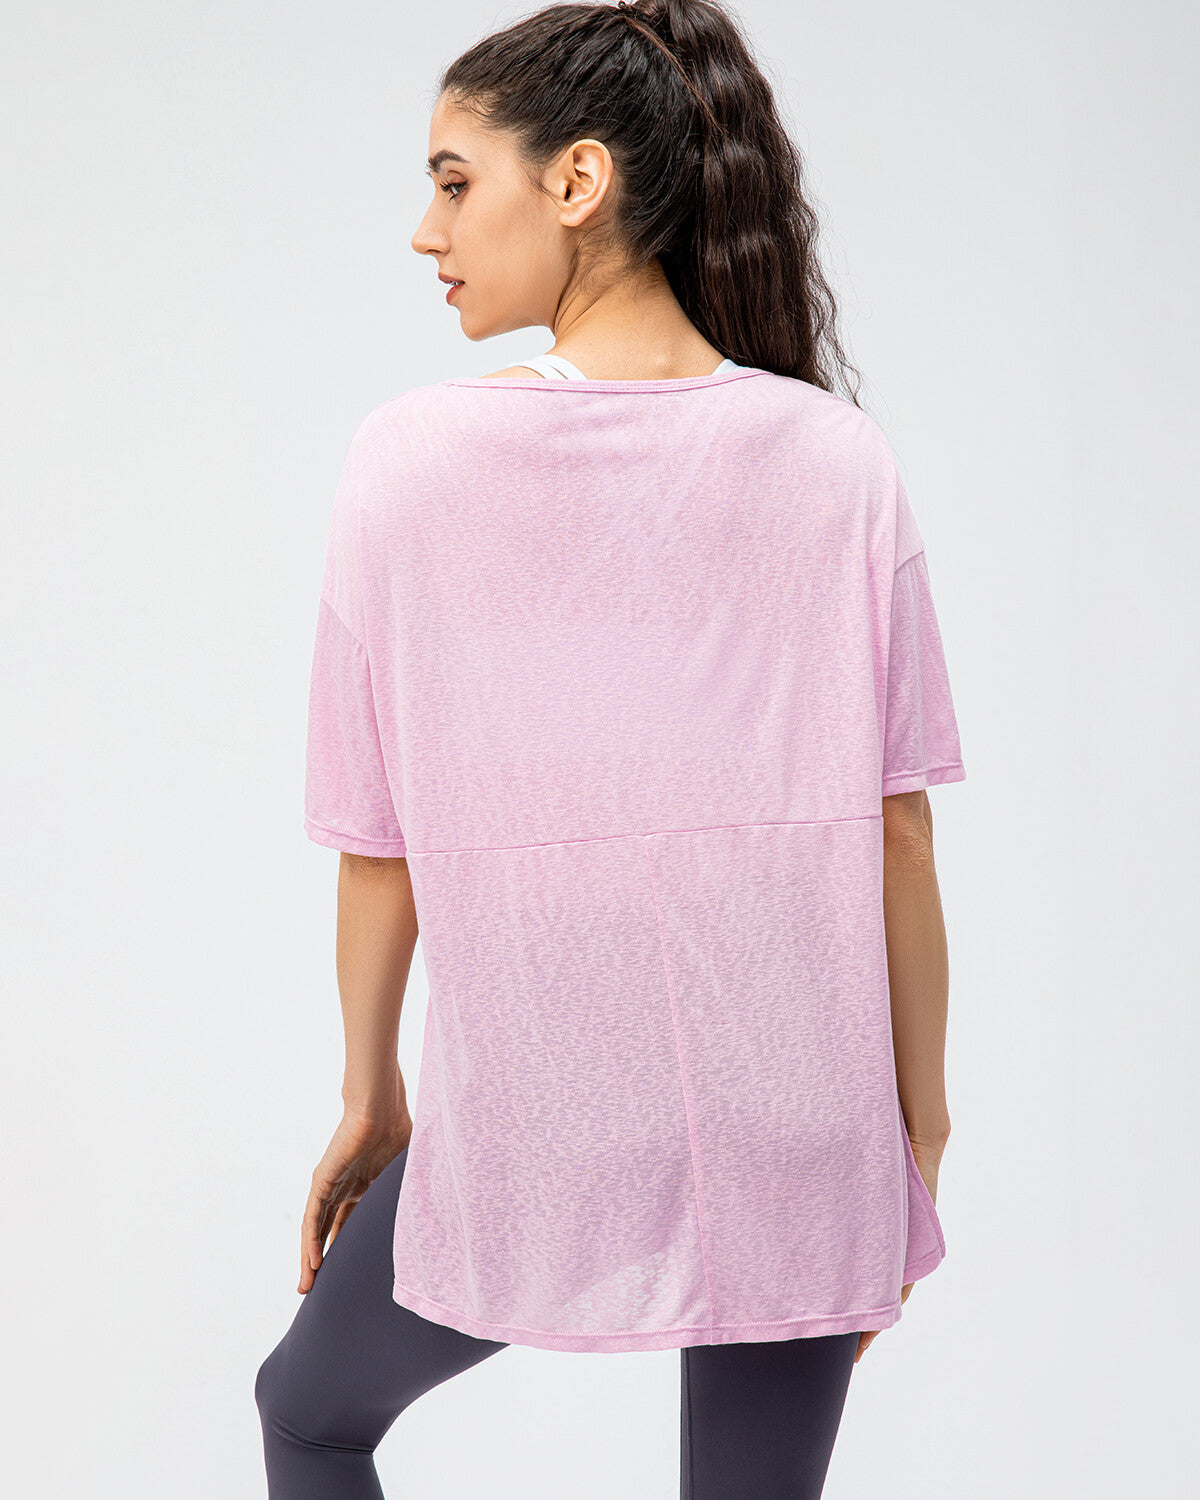 Melody T-Shirt - Pink